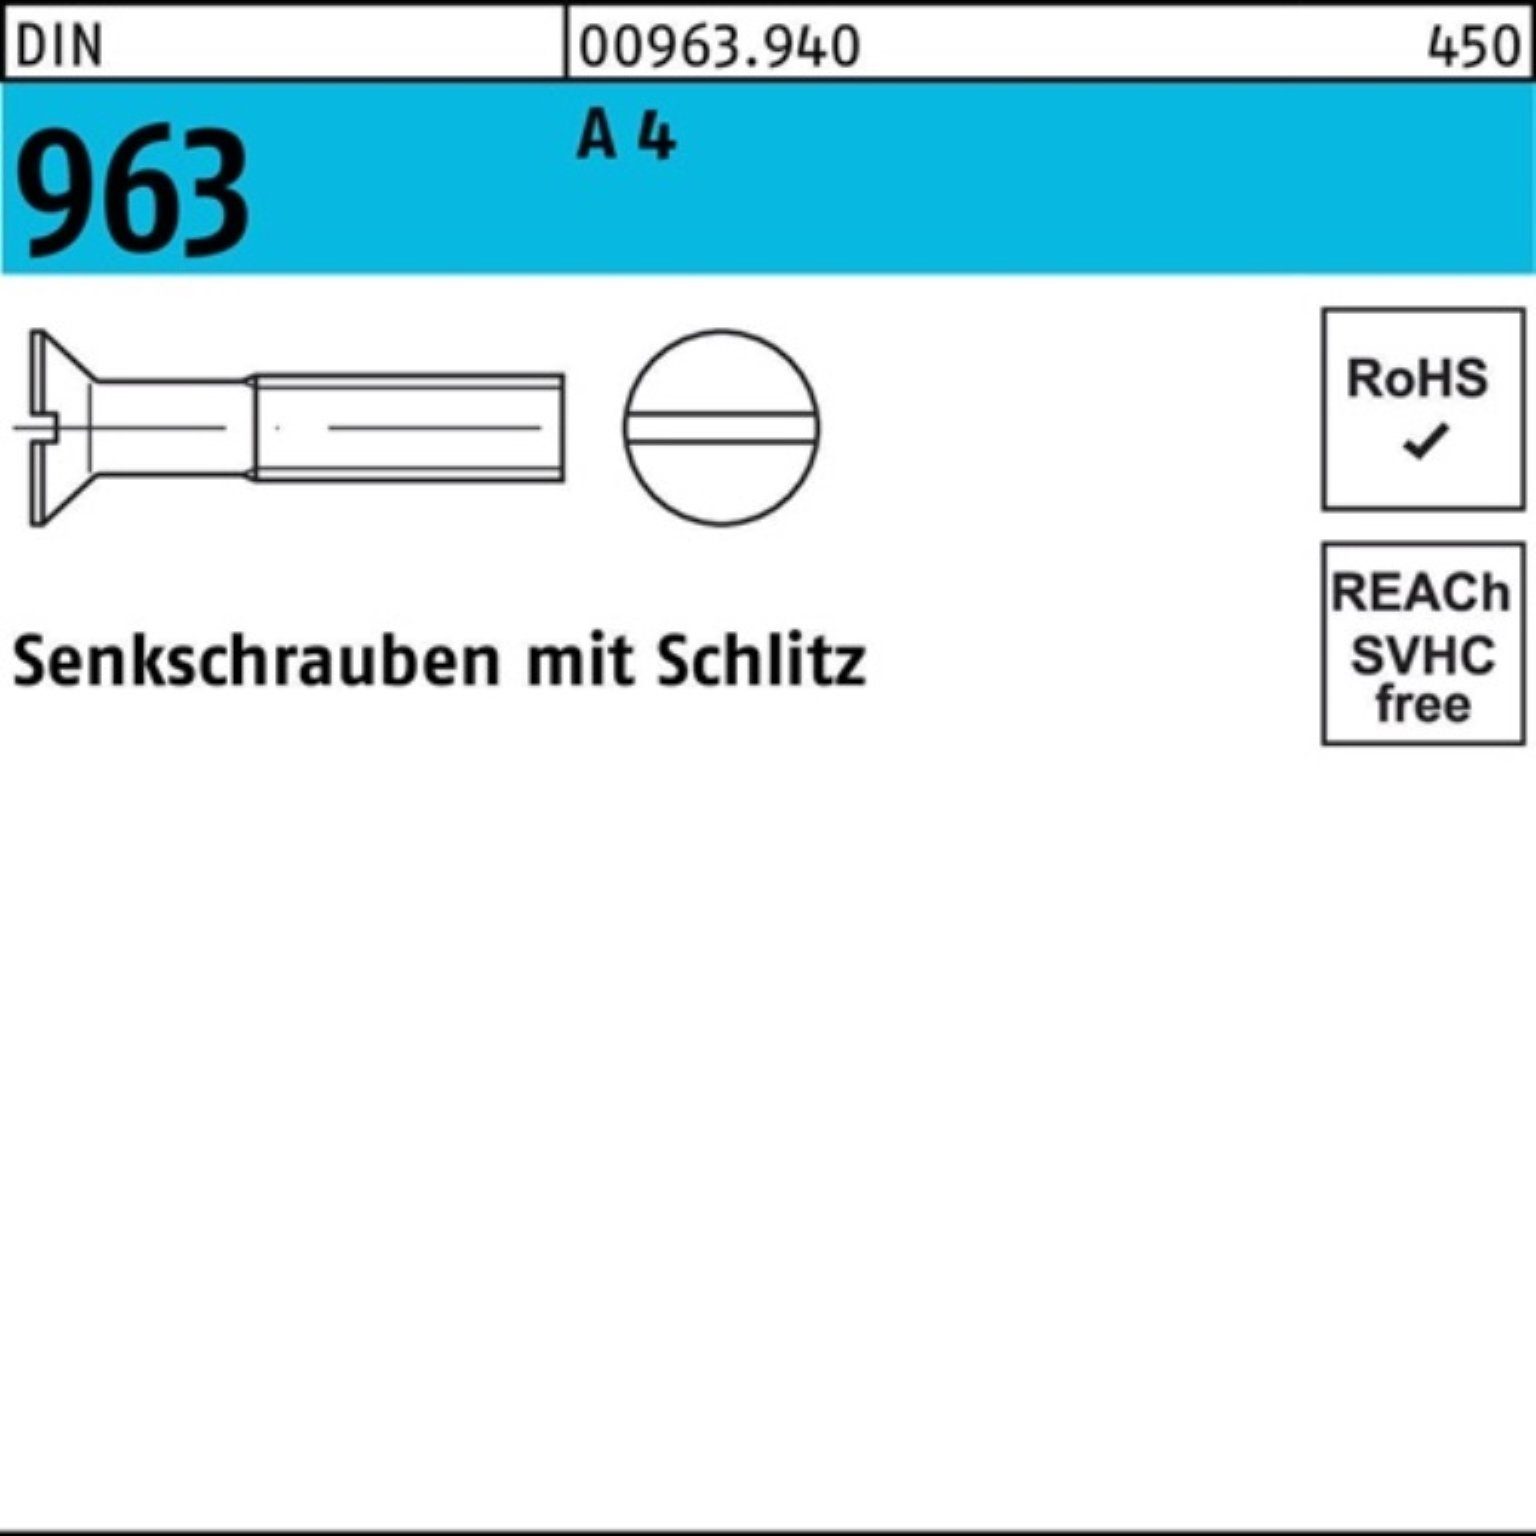 Pack 963 4 963 100 DIN A Stück 20 Schlitz 100er Reyher Senkschraube DIN Senkschraube M10x